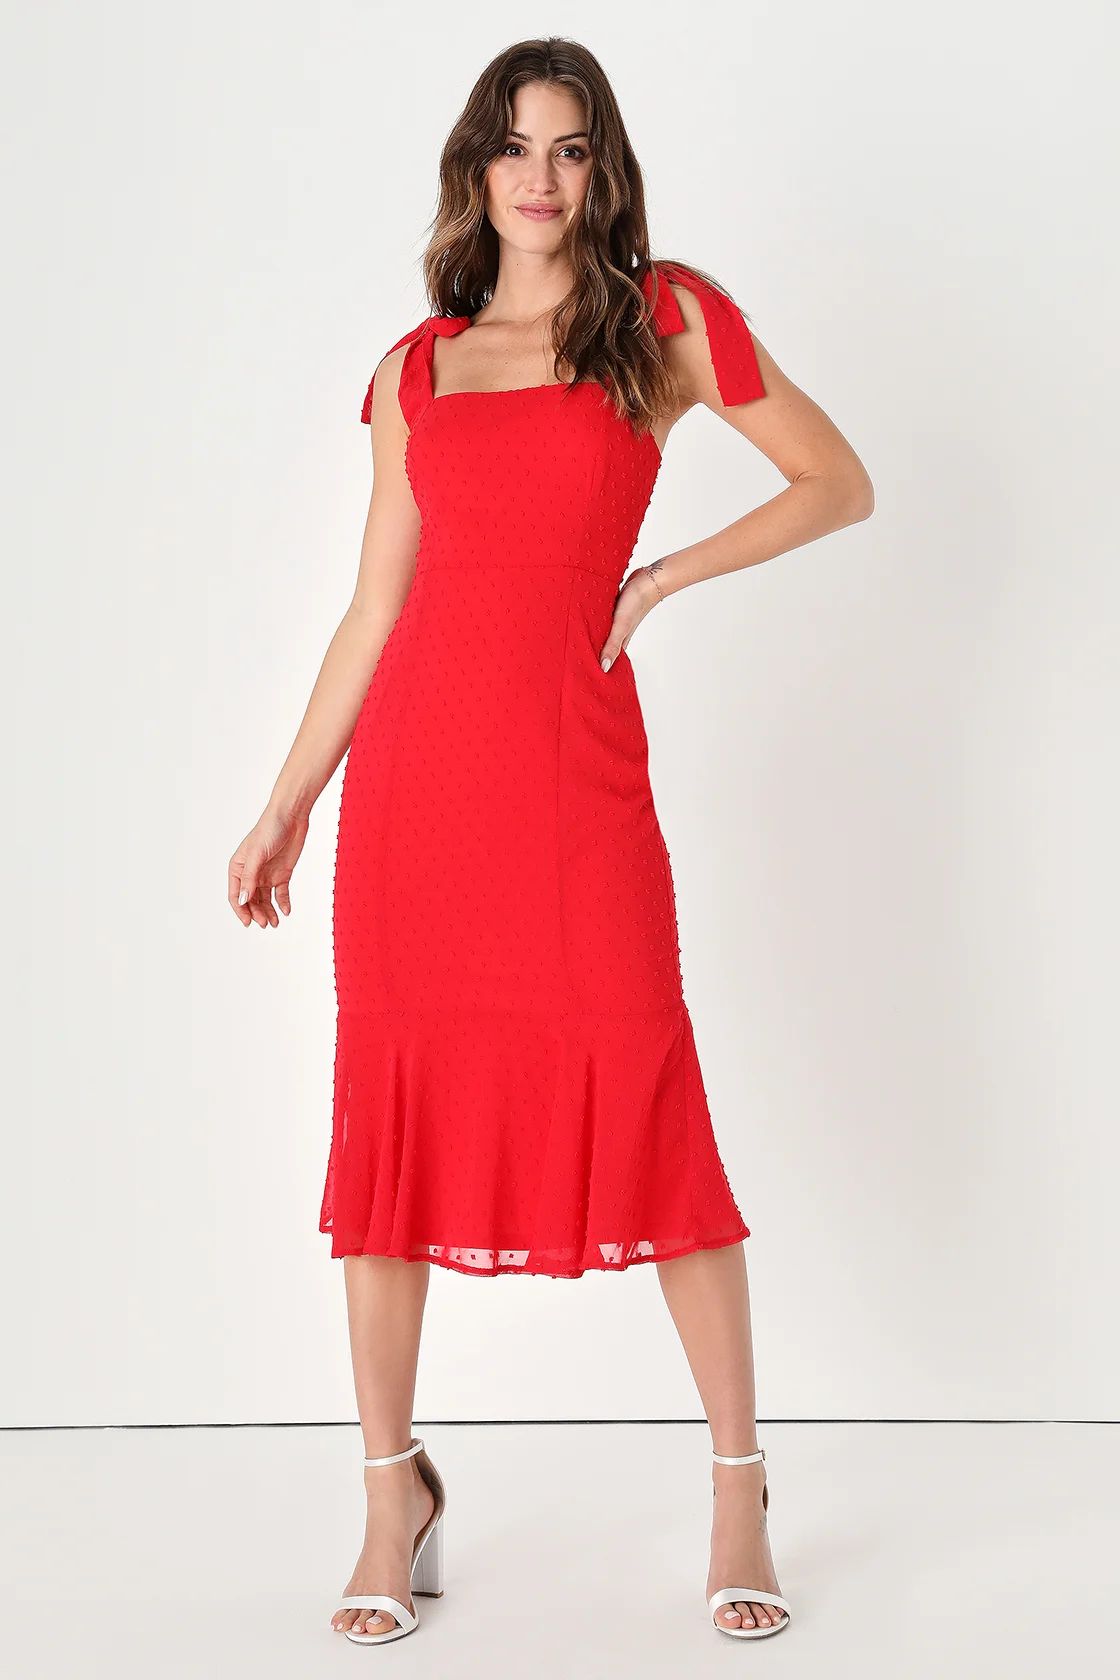 Bimini Bright Red Swiss Dot Tie-Strap Midi Dress | Lulus (US)